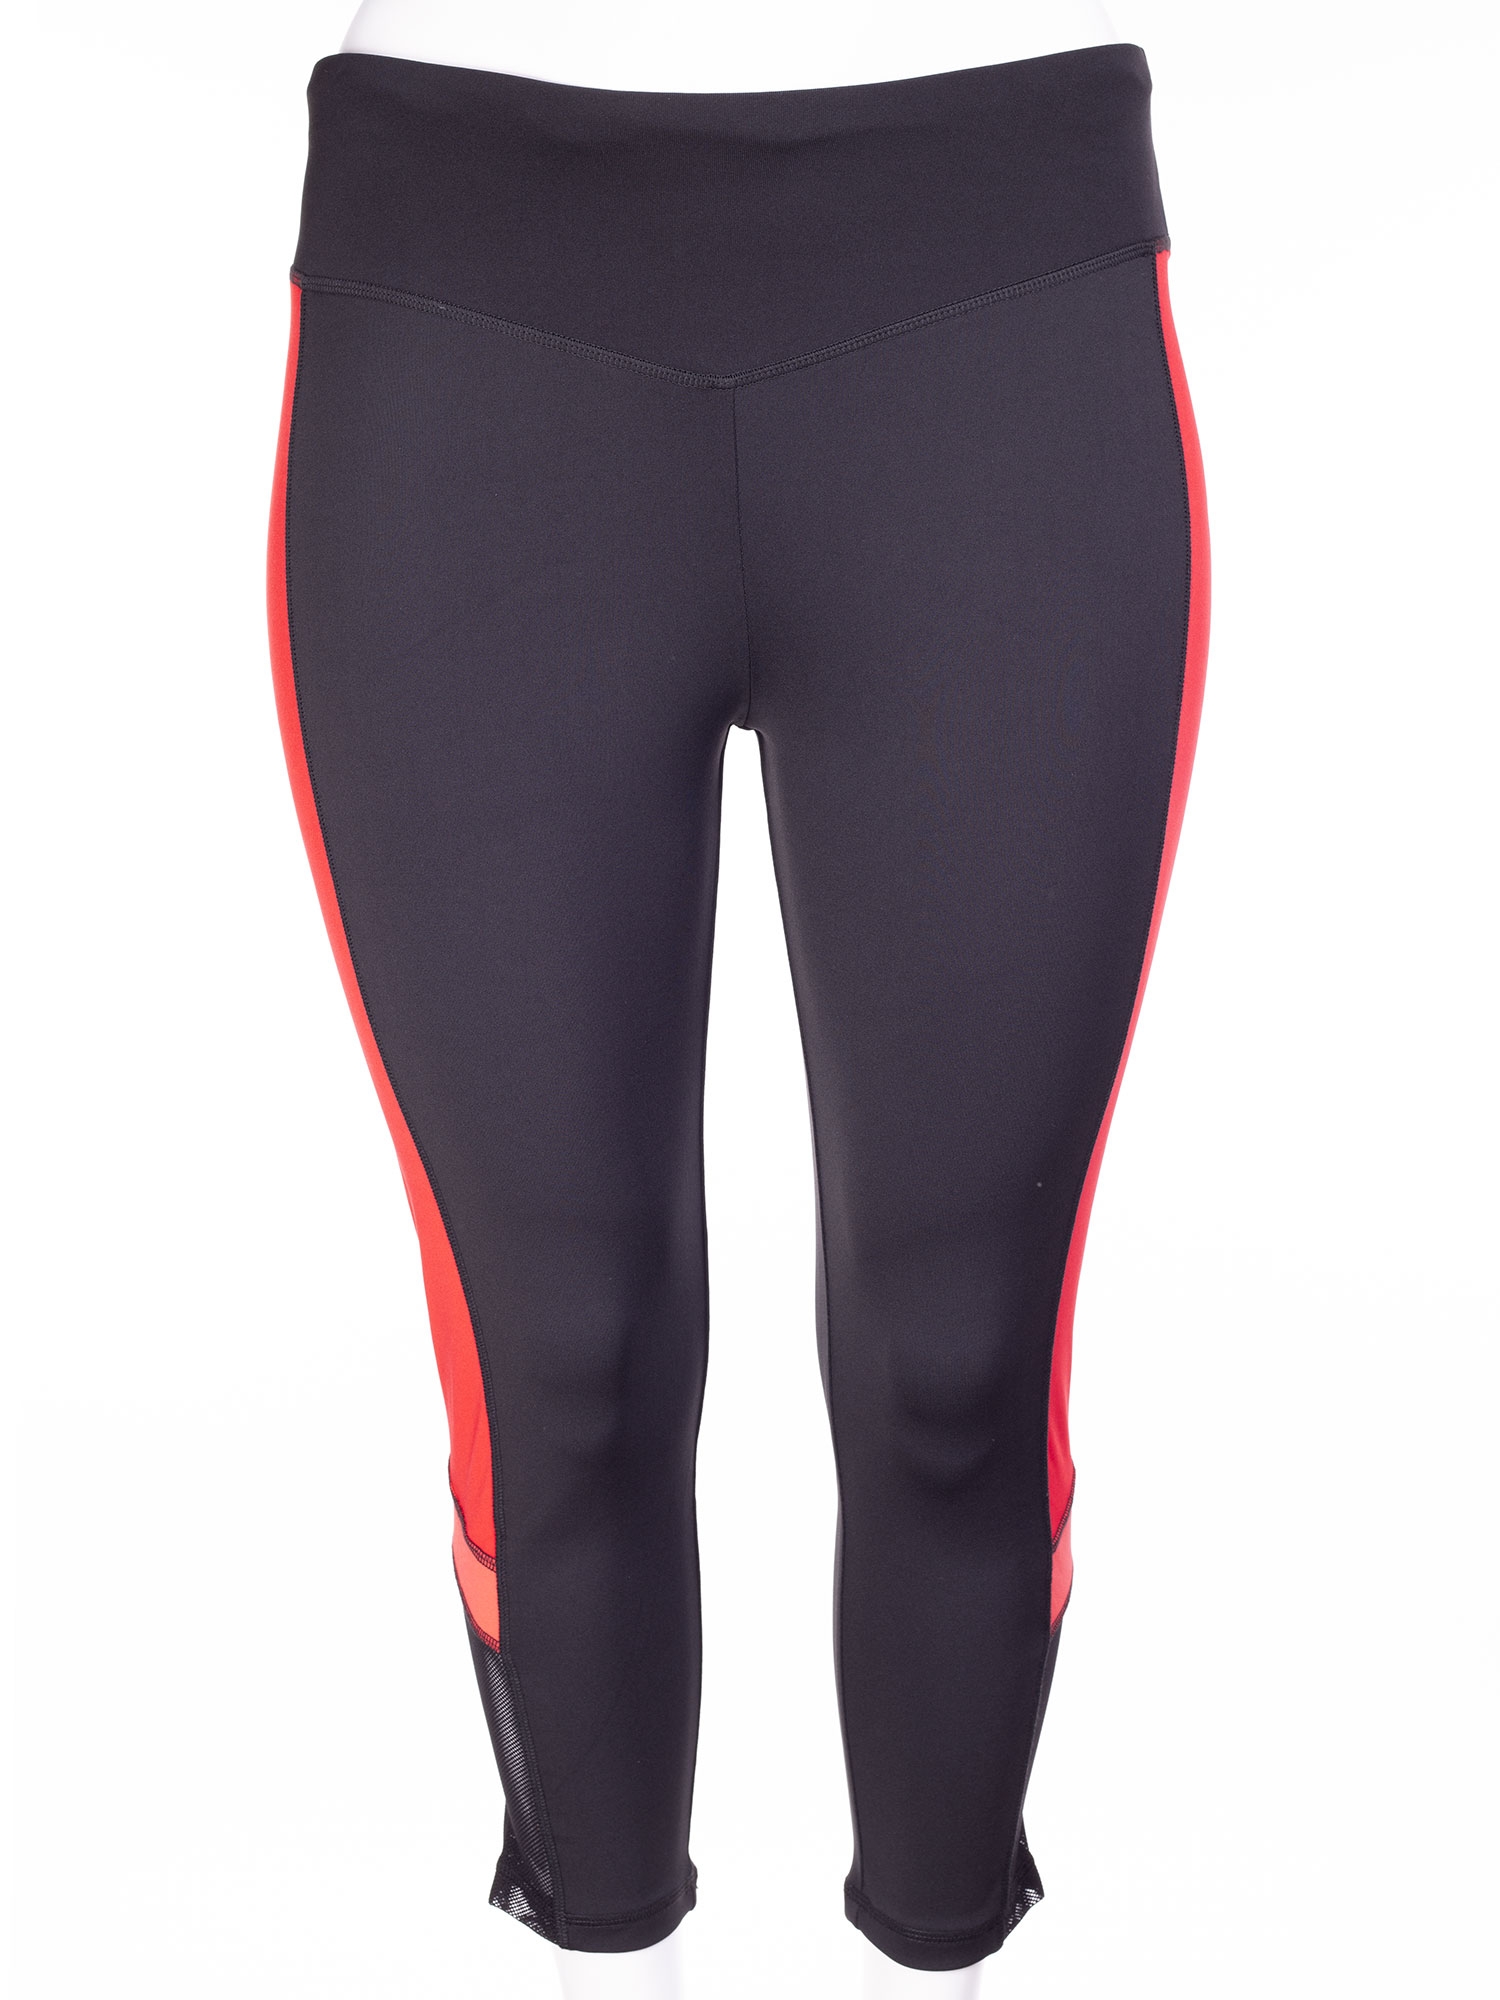 Billede af Aprico Sport Capri træningsbukser med mesh og rød detalje, 46-48 / M